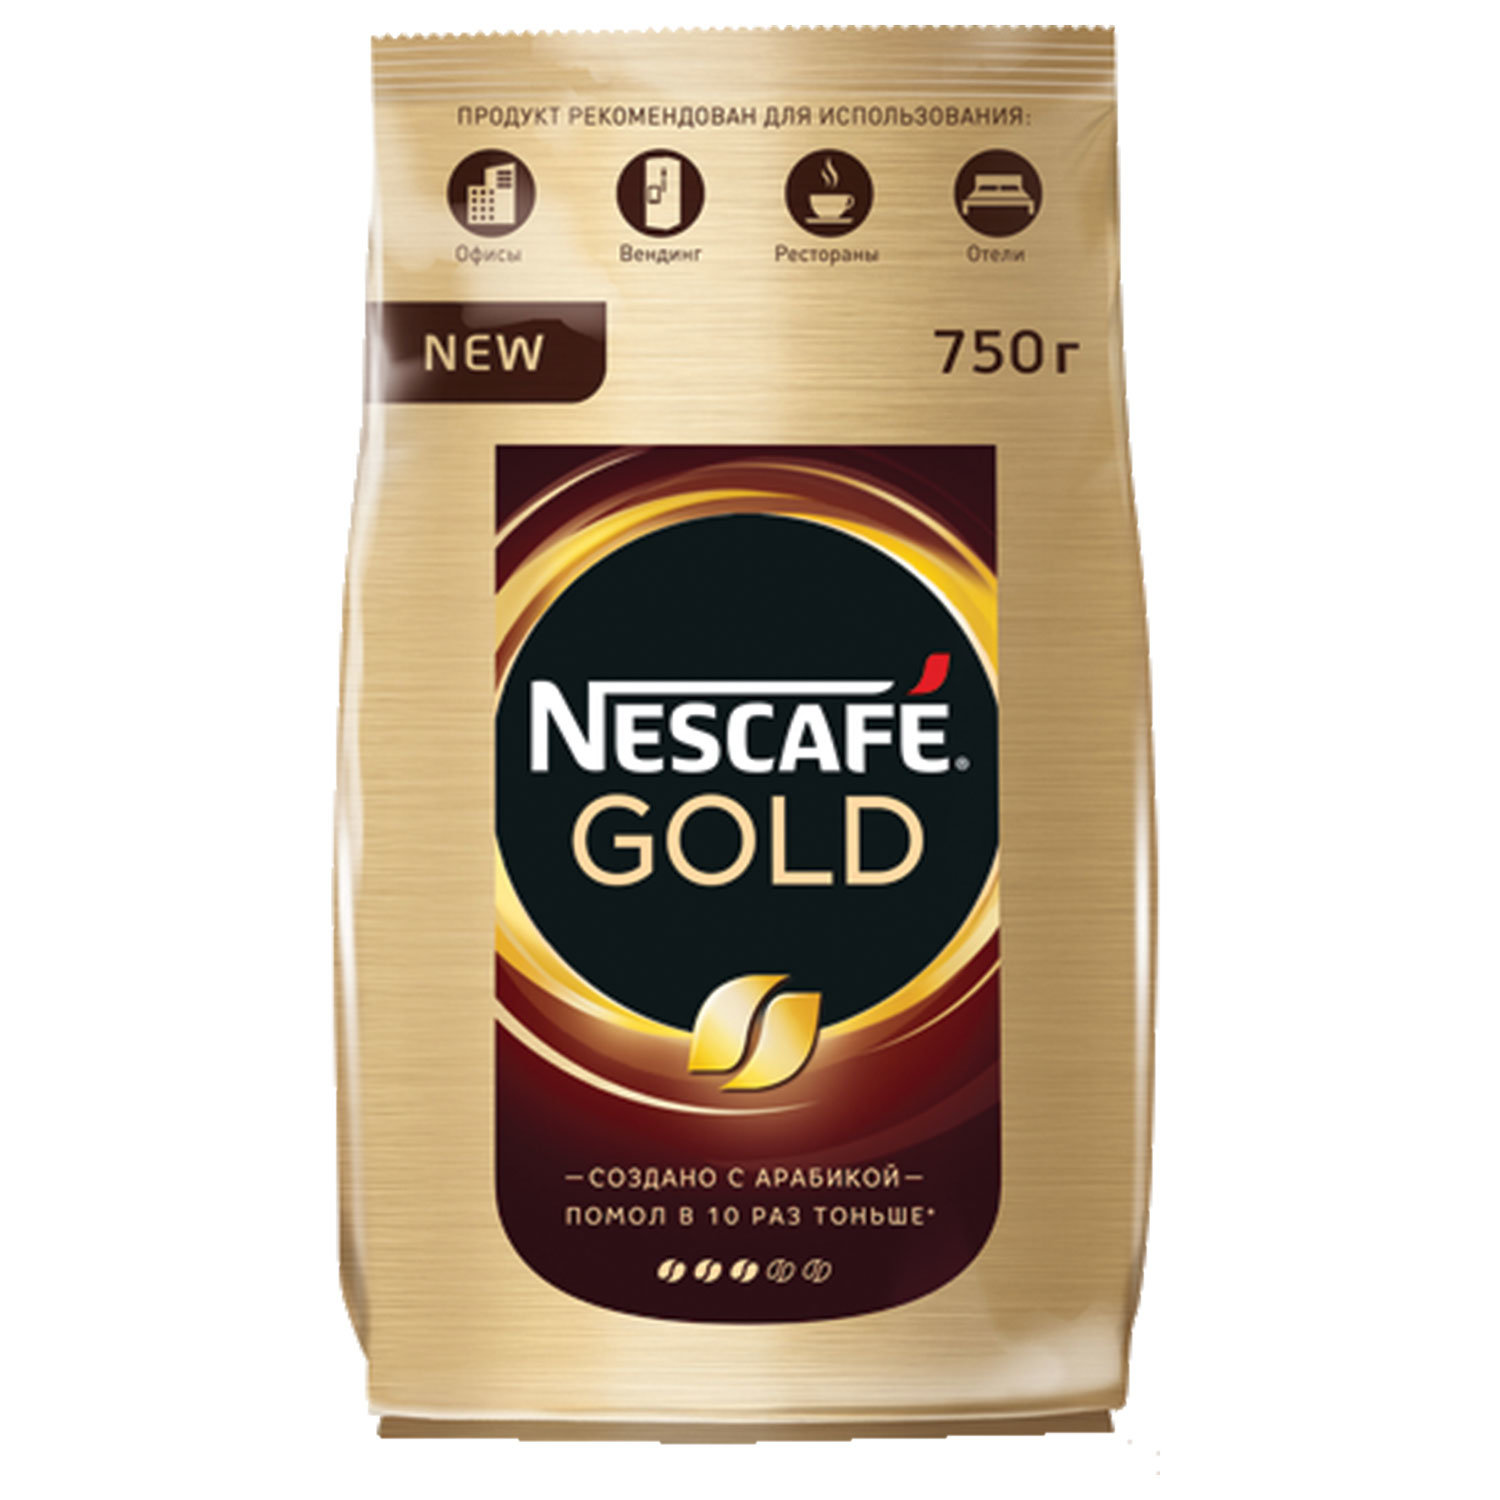 Кофе nescafe gold 900 г. Nescafe кофе Gold 900г.. Кофе Нескафе Голд 900 гр. Nescafe Gold 750 гр. Кофе "Nescafe Gold", 750 гр..